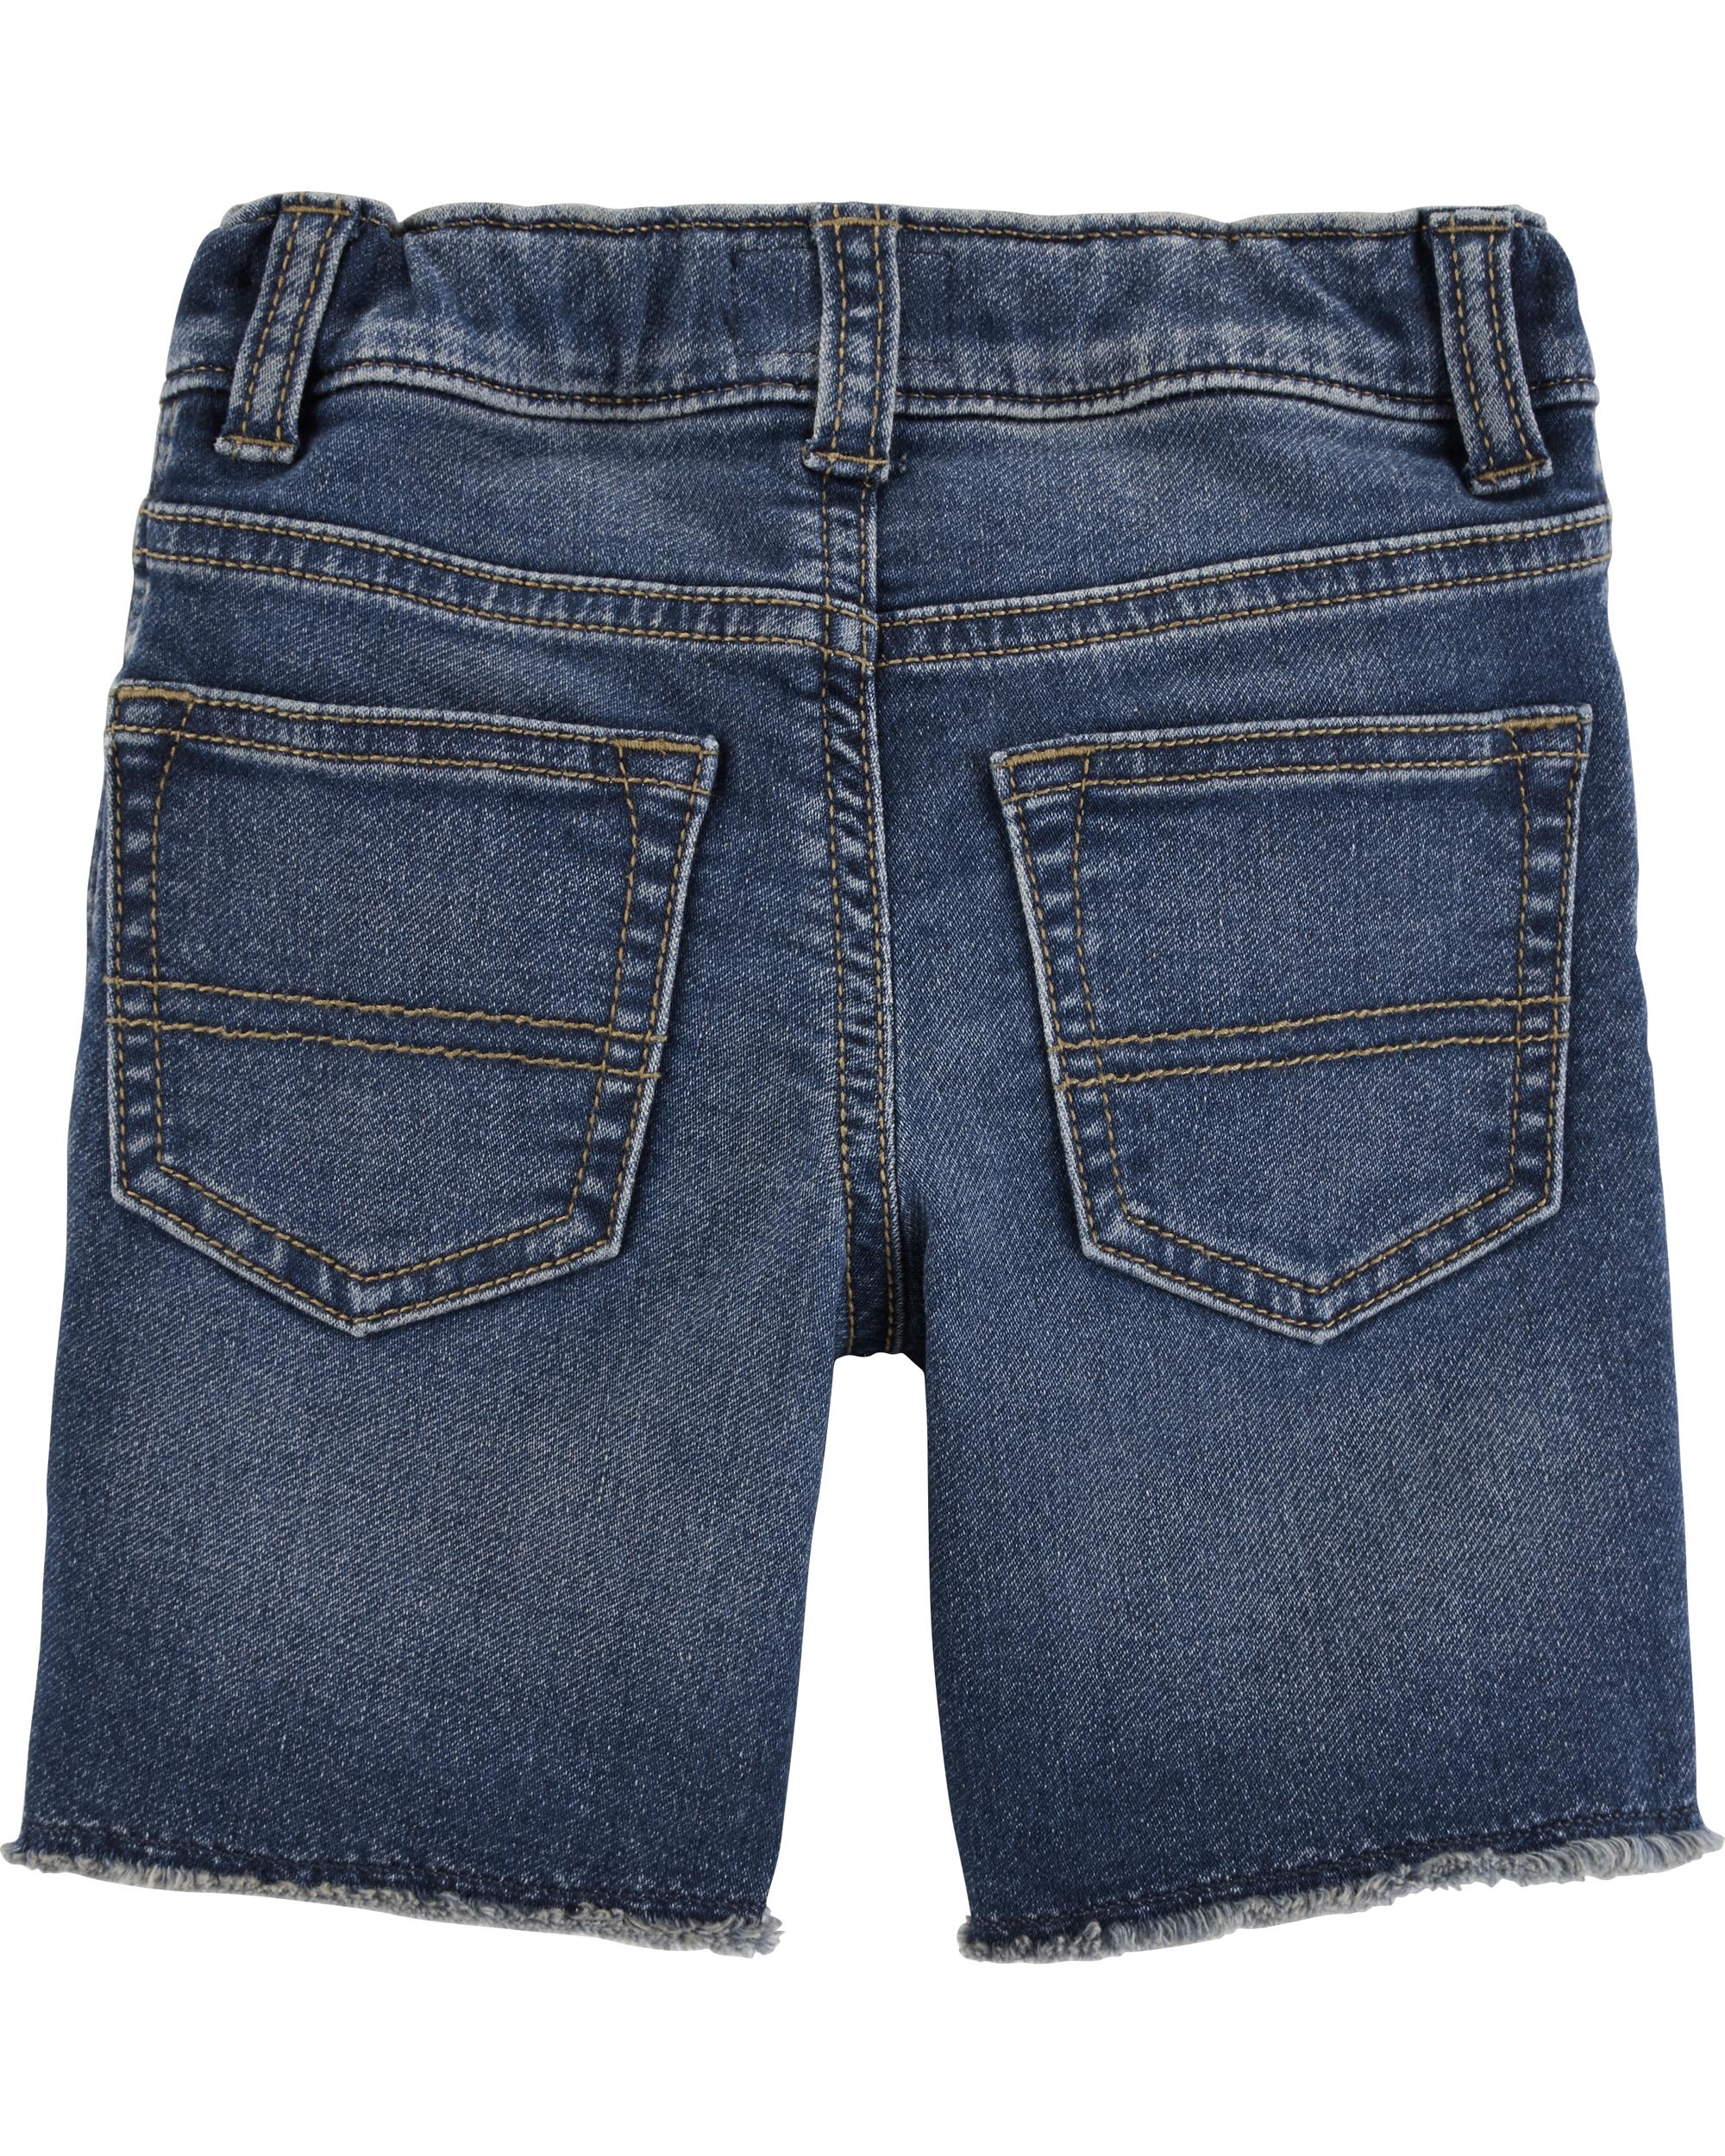 Raw Hem Shorts - Medium Vintage Wash | oshkosh.com